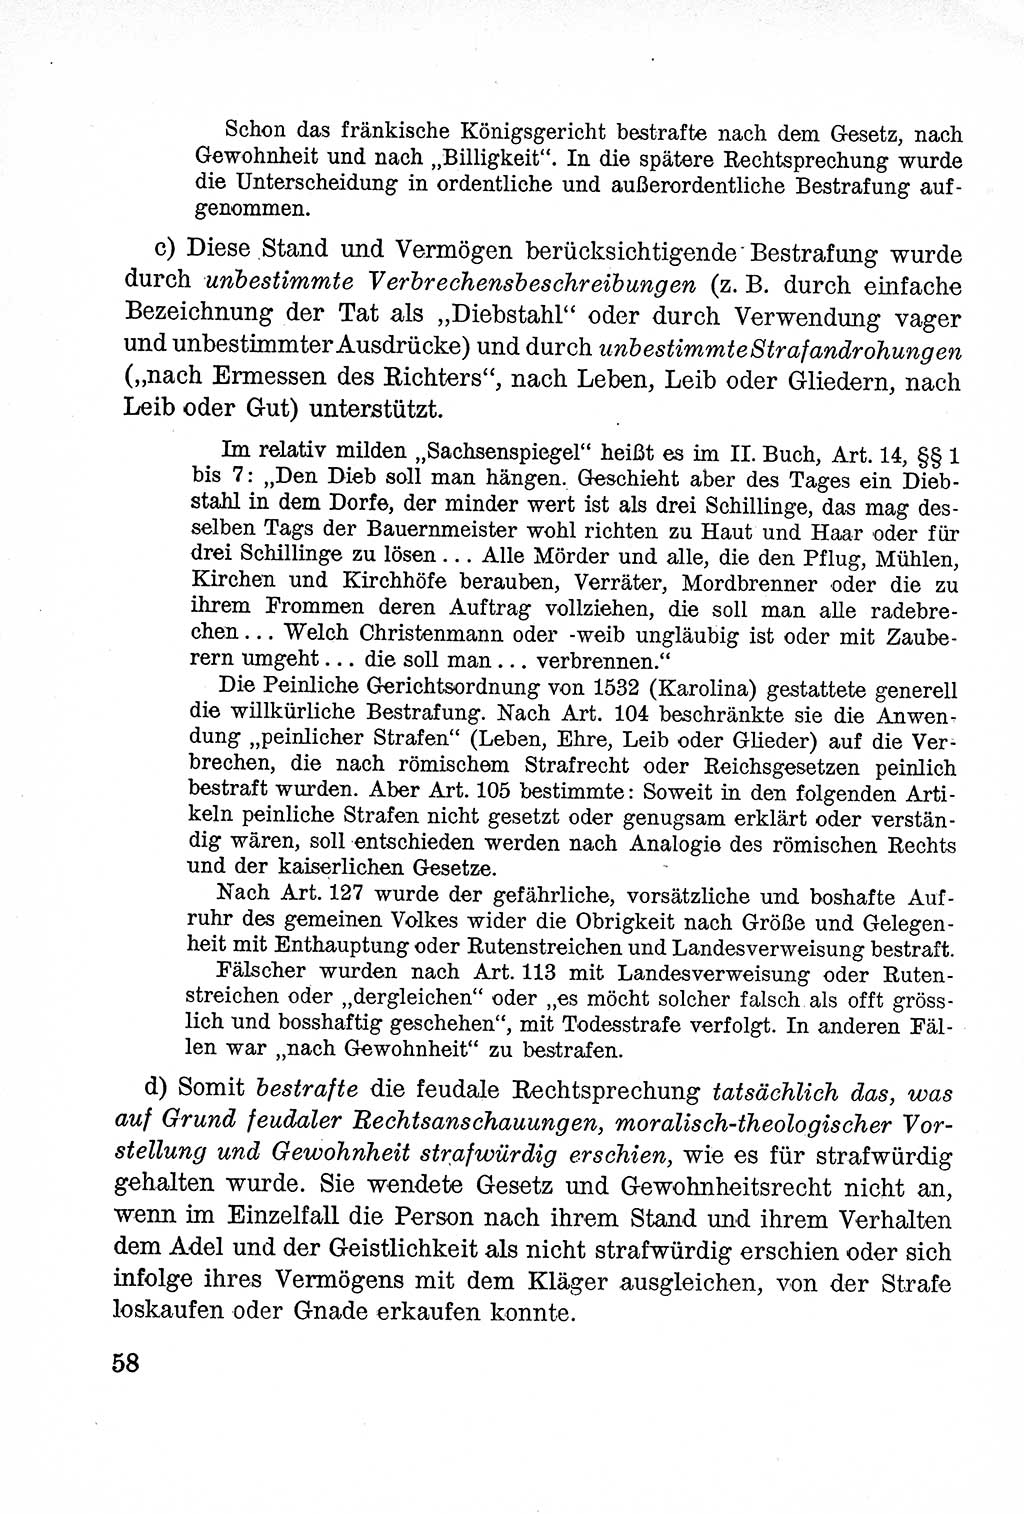 Lehrbuch des Strafrechts der Deutschen Demokratischen Republik (DDR), Allgemeiner Teil 1957, Seite 58 (Lb. Strafr. DDR AT 1957, S. 58)